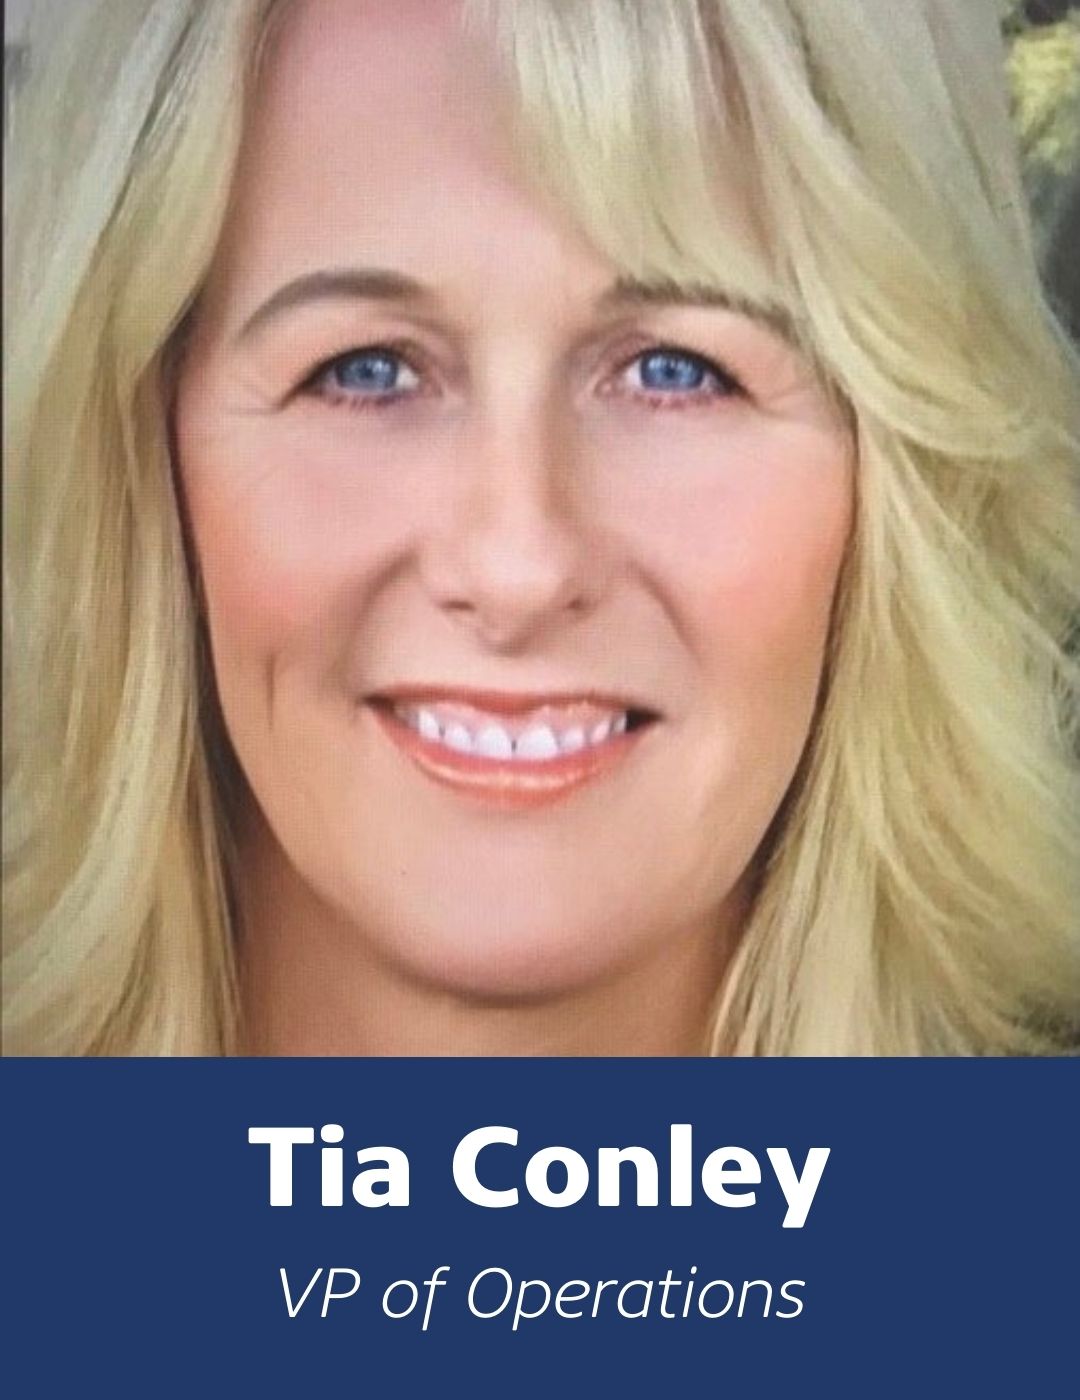 VP of Operations, Tia Conley